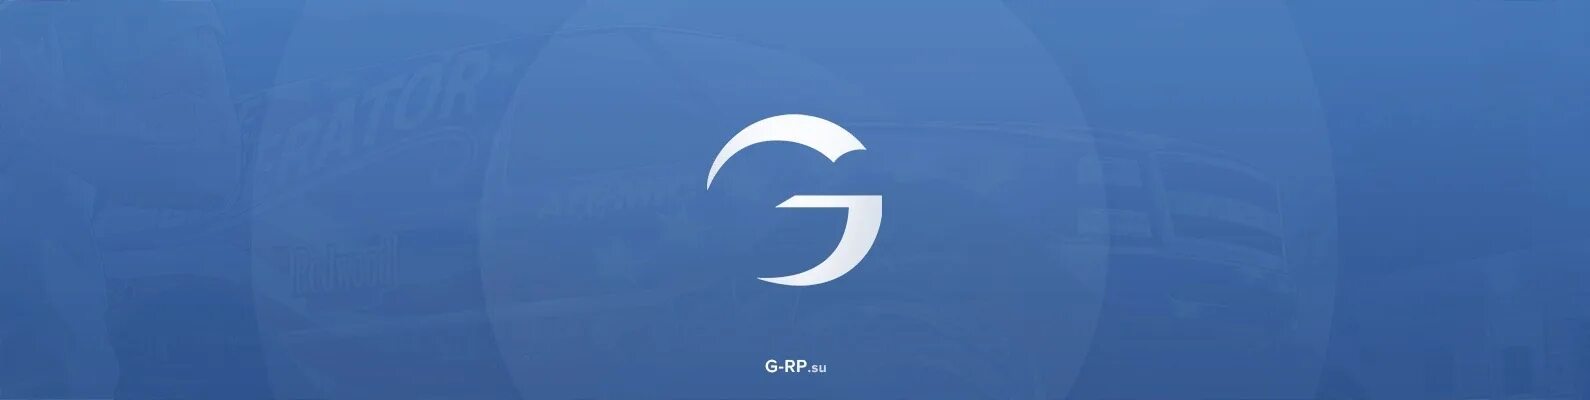 Гамбит самп. Gambit Rp. Значок Gambit Rp. Логотип РП. Logo логотипа Gambit Rp.